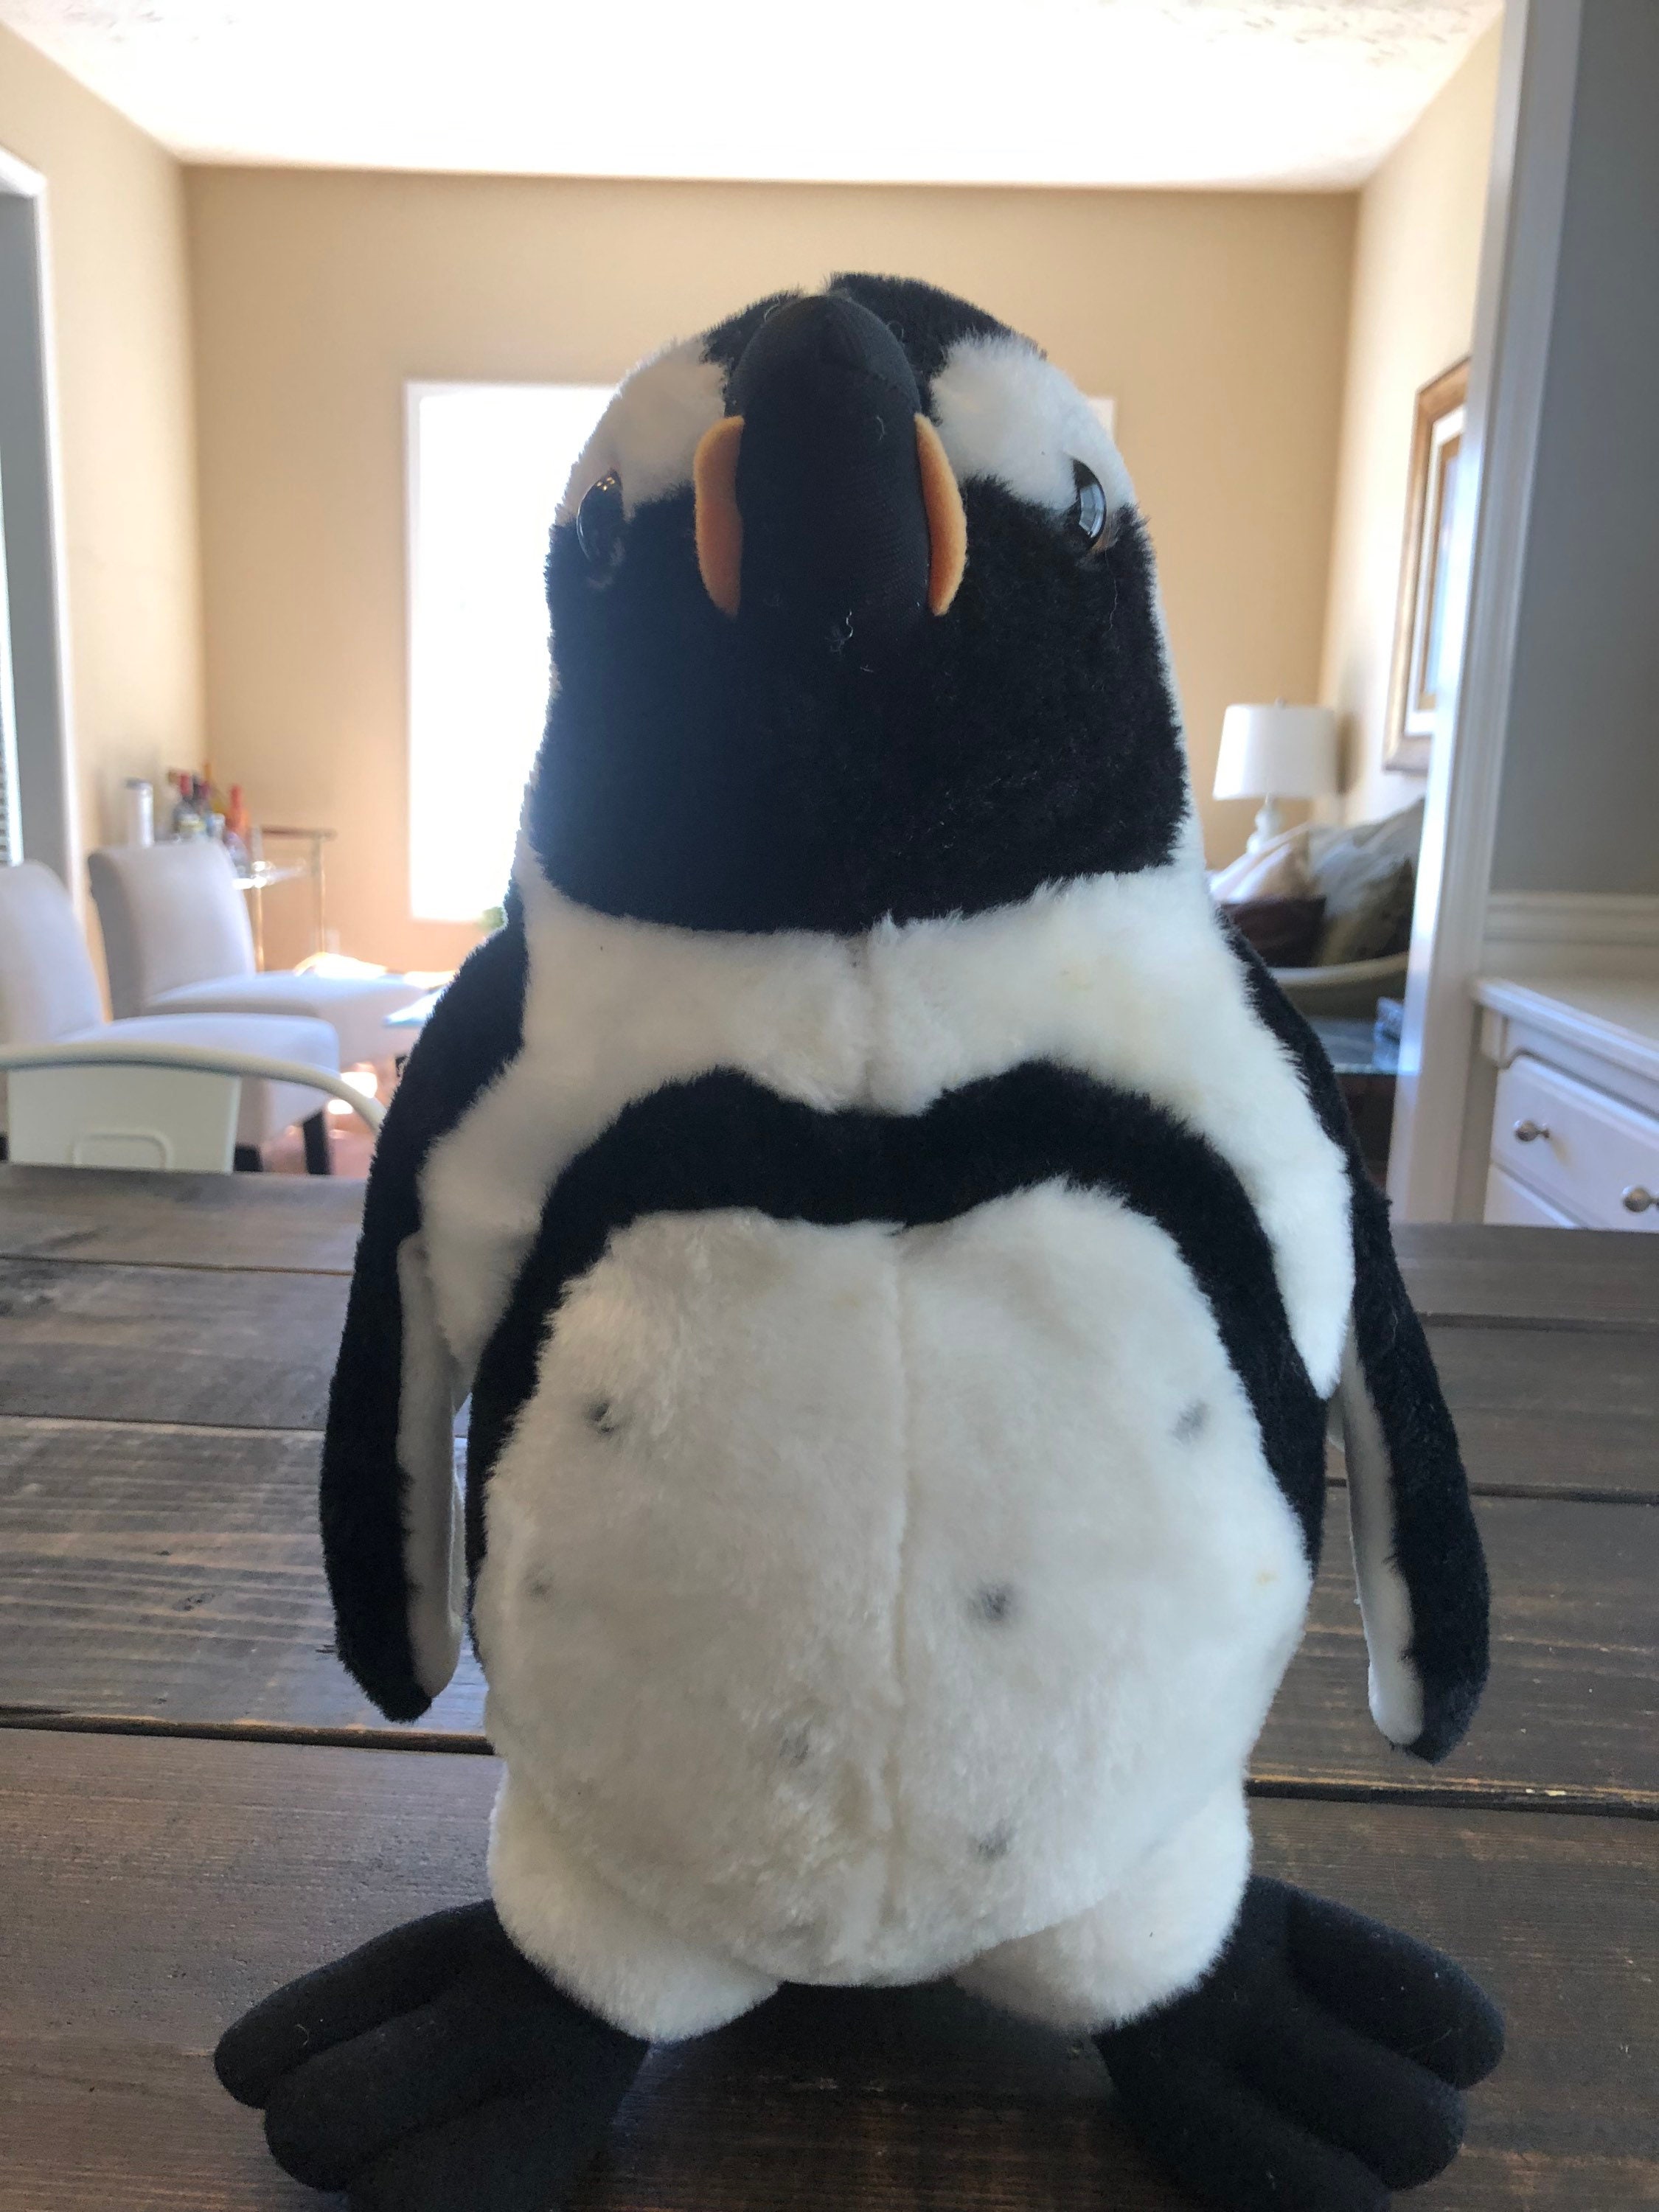 Pingouin floqué blanc H 13 cm Sous son blanc manteau - Personnages ,  peluches décoratives et automates - Décomania